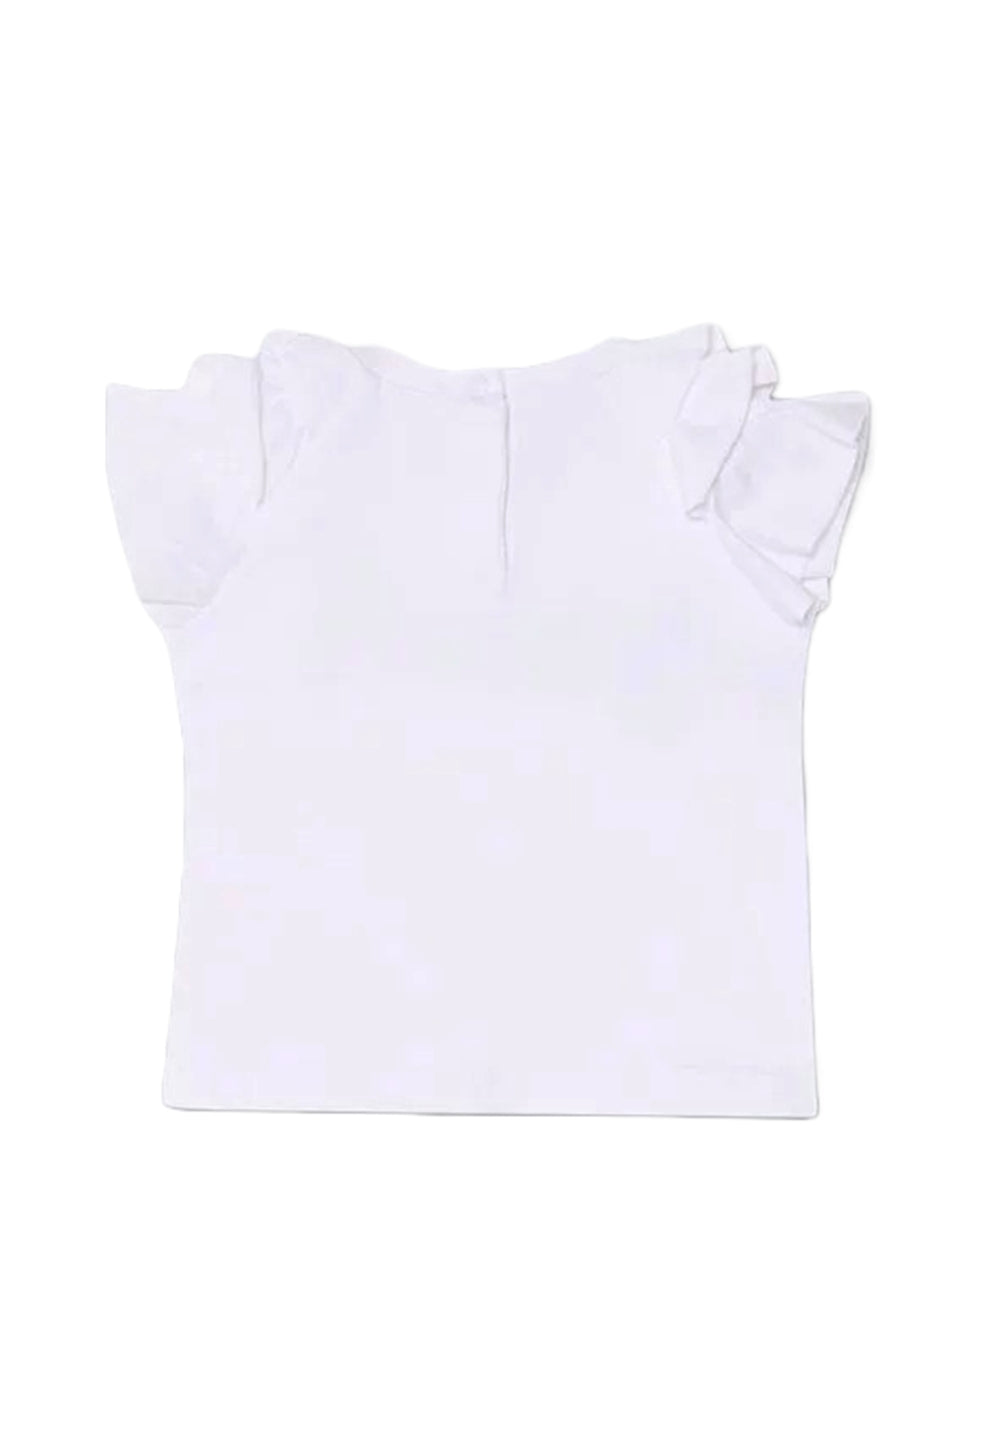 White t-shirt for baby girl